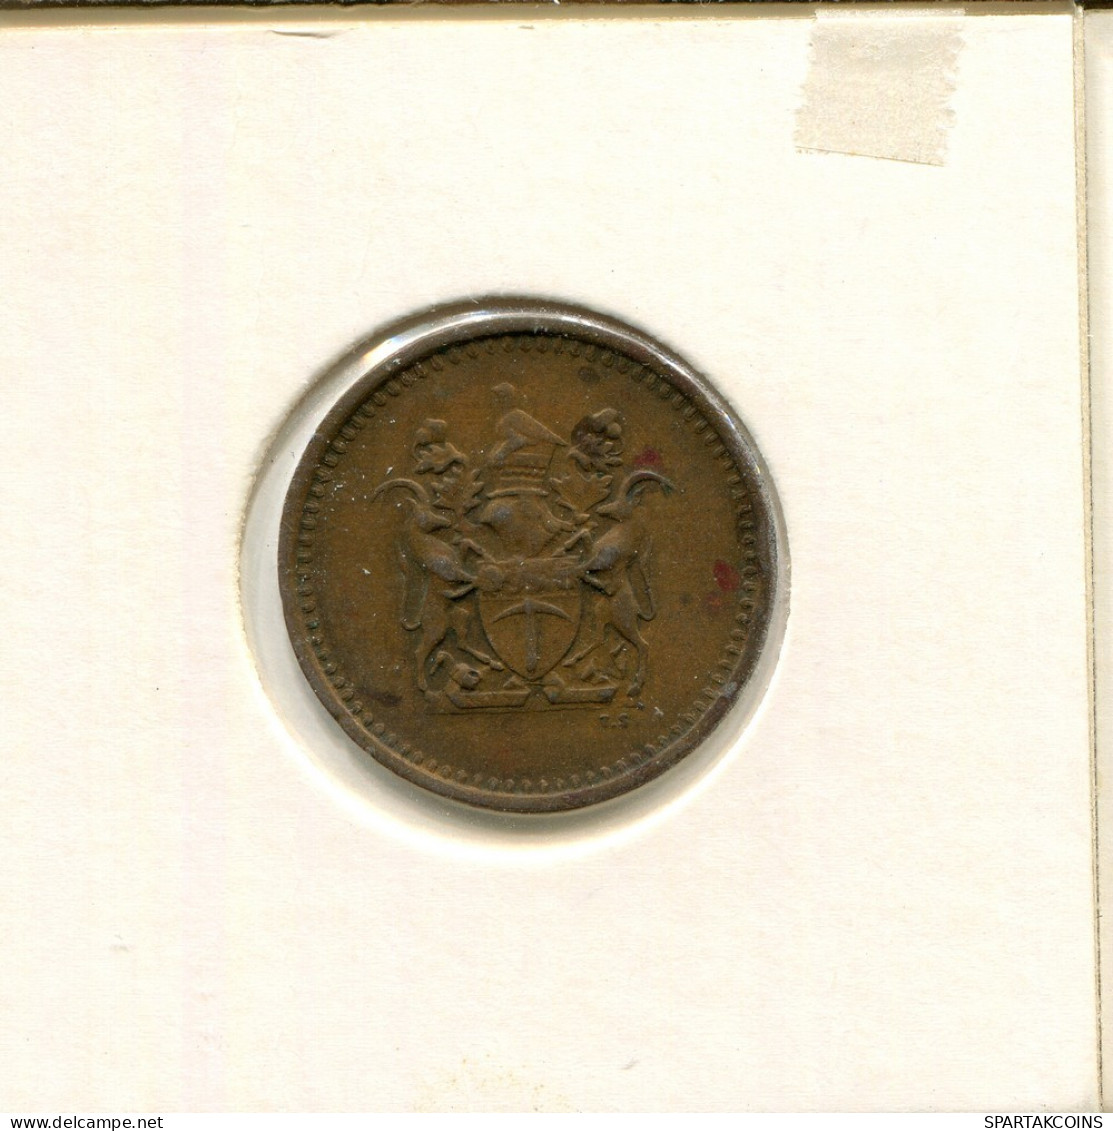 1 CENT 1970 RODESIA RHODESIA Moneda #AS038.E.A - Rhodésie